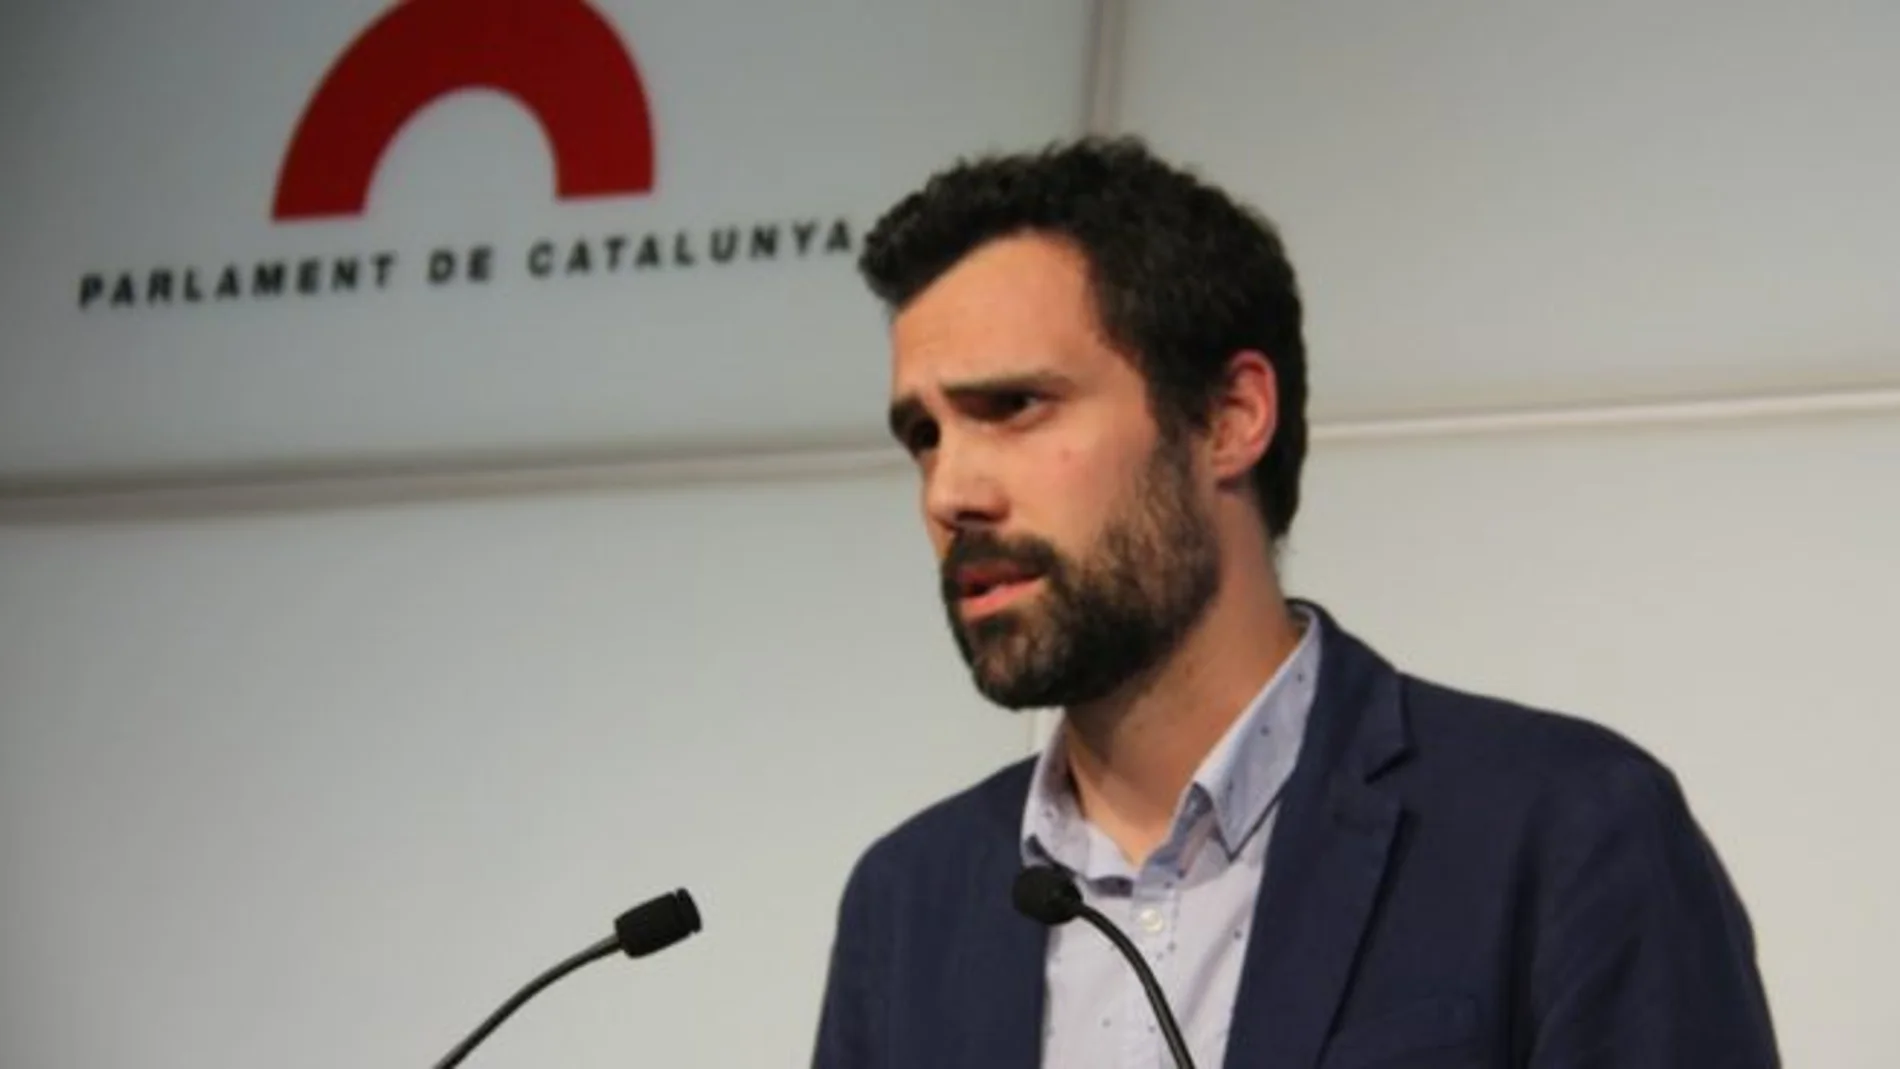 Roger Torrent Portavoz adjunto de Junts x Si en el parlamento de Cataluña